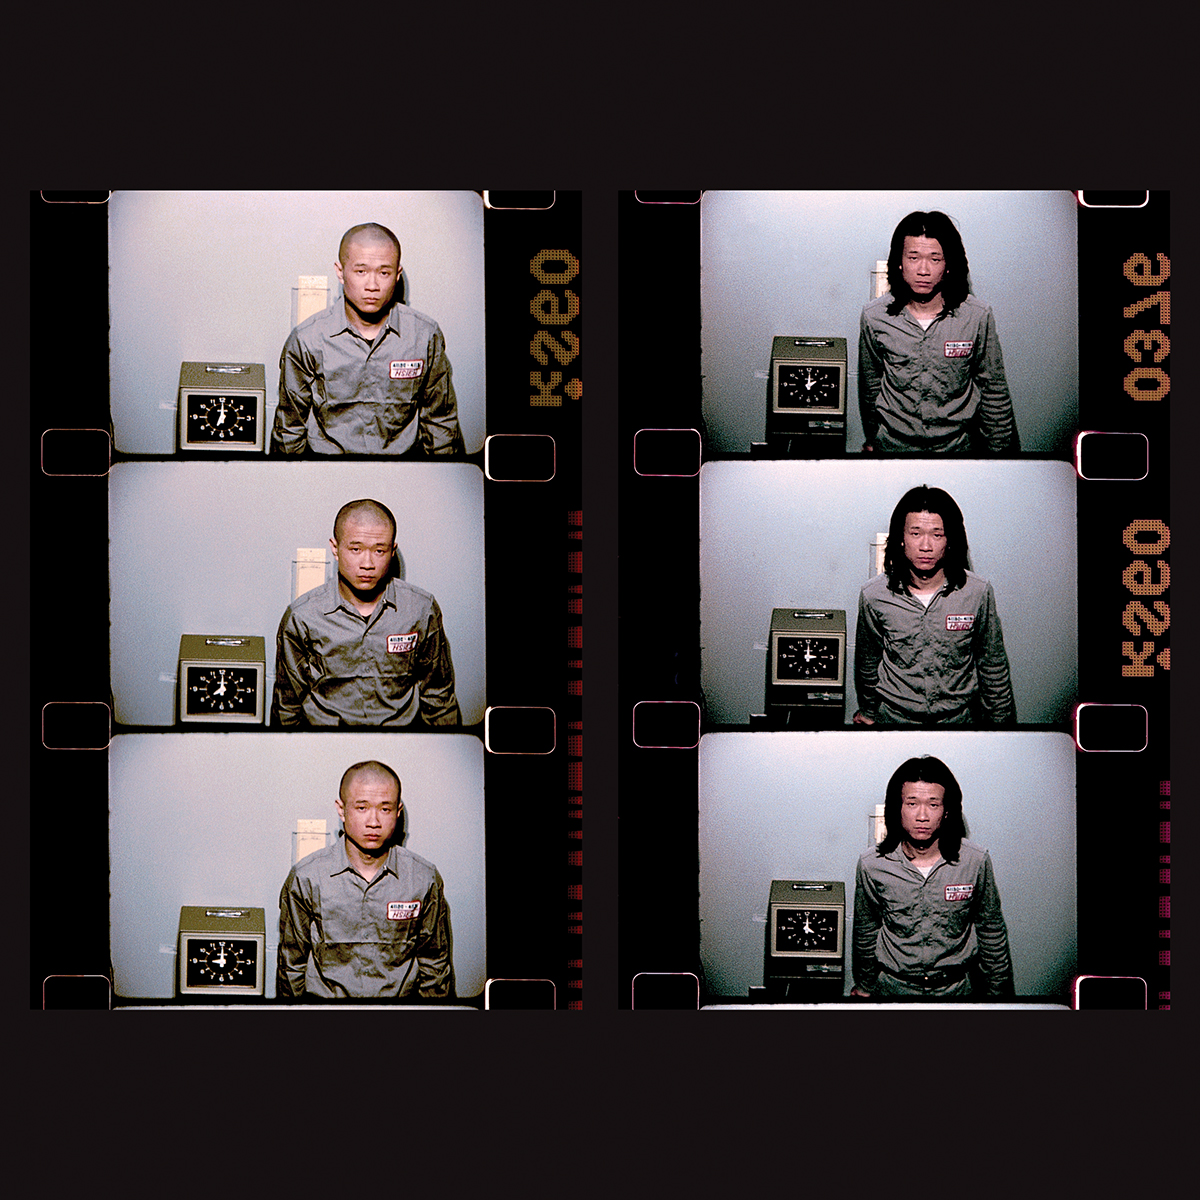 謝德慶，〈一年行為表演1980-1981〉，行為表演，紐約，16釐米底片 影像©謝德慶，藝術家與尚凱利畫廊提供